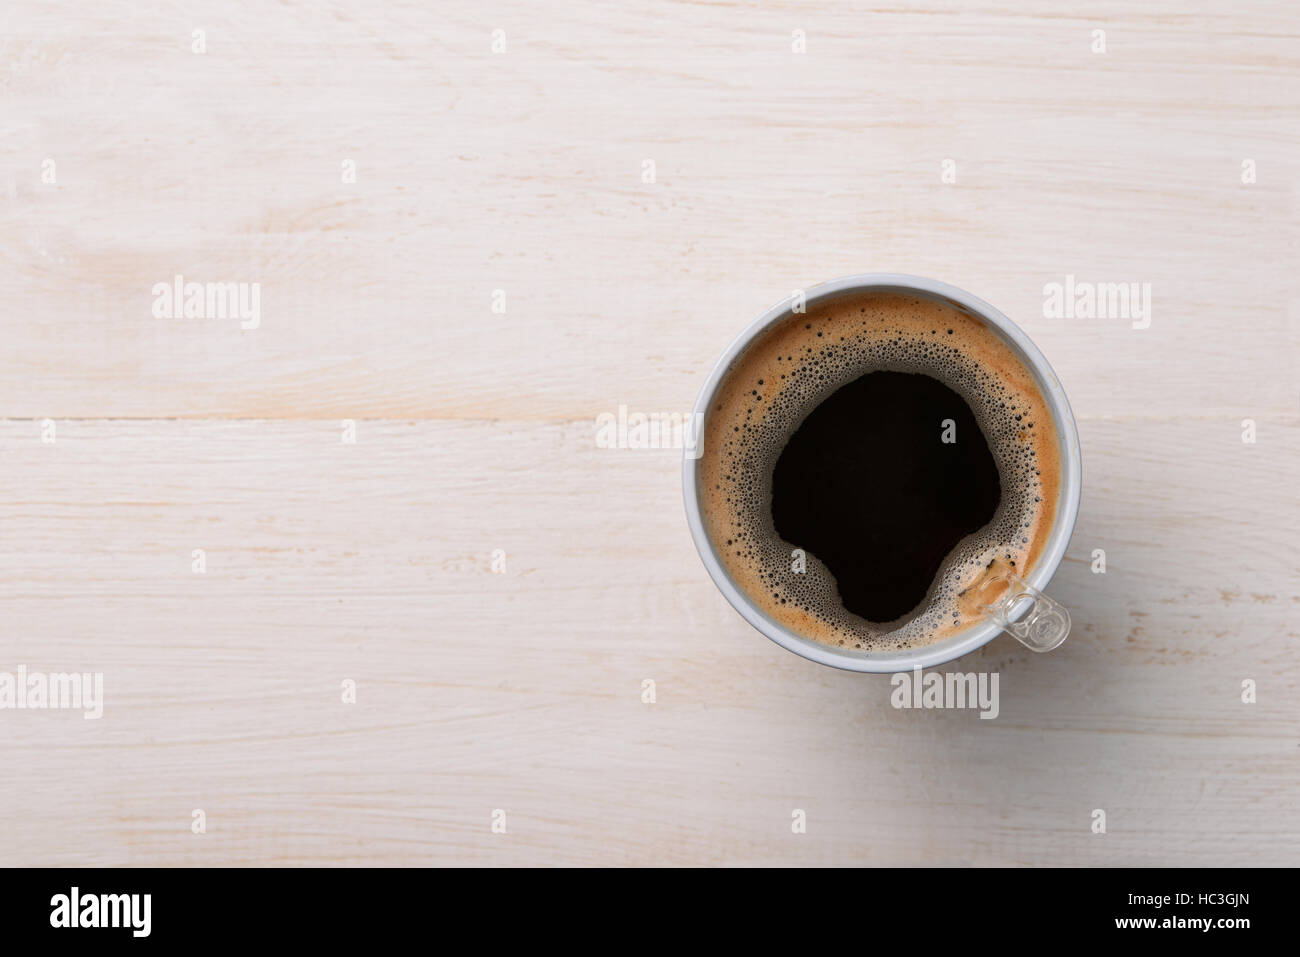 Vue de dessus de café noir dans la tasse en plastique sur la table en bois blanc Banque D'Images